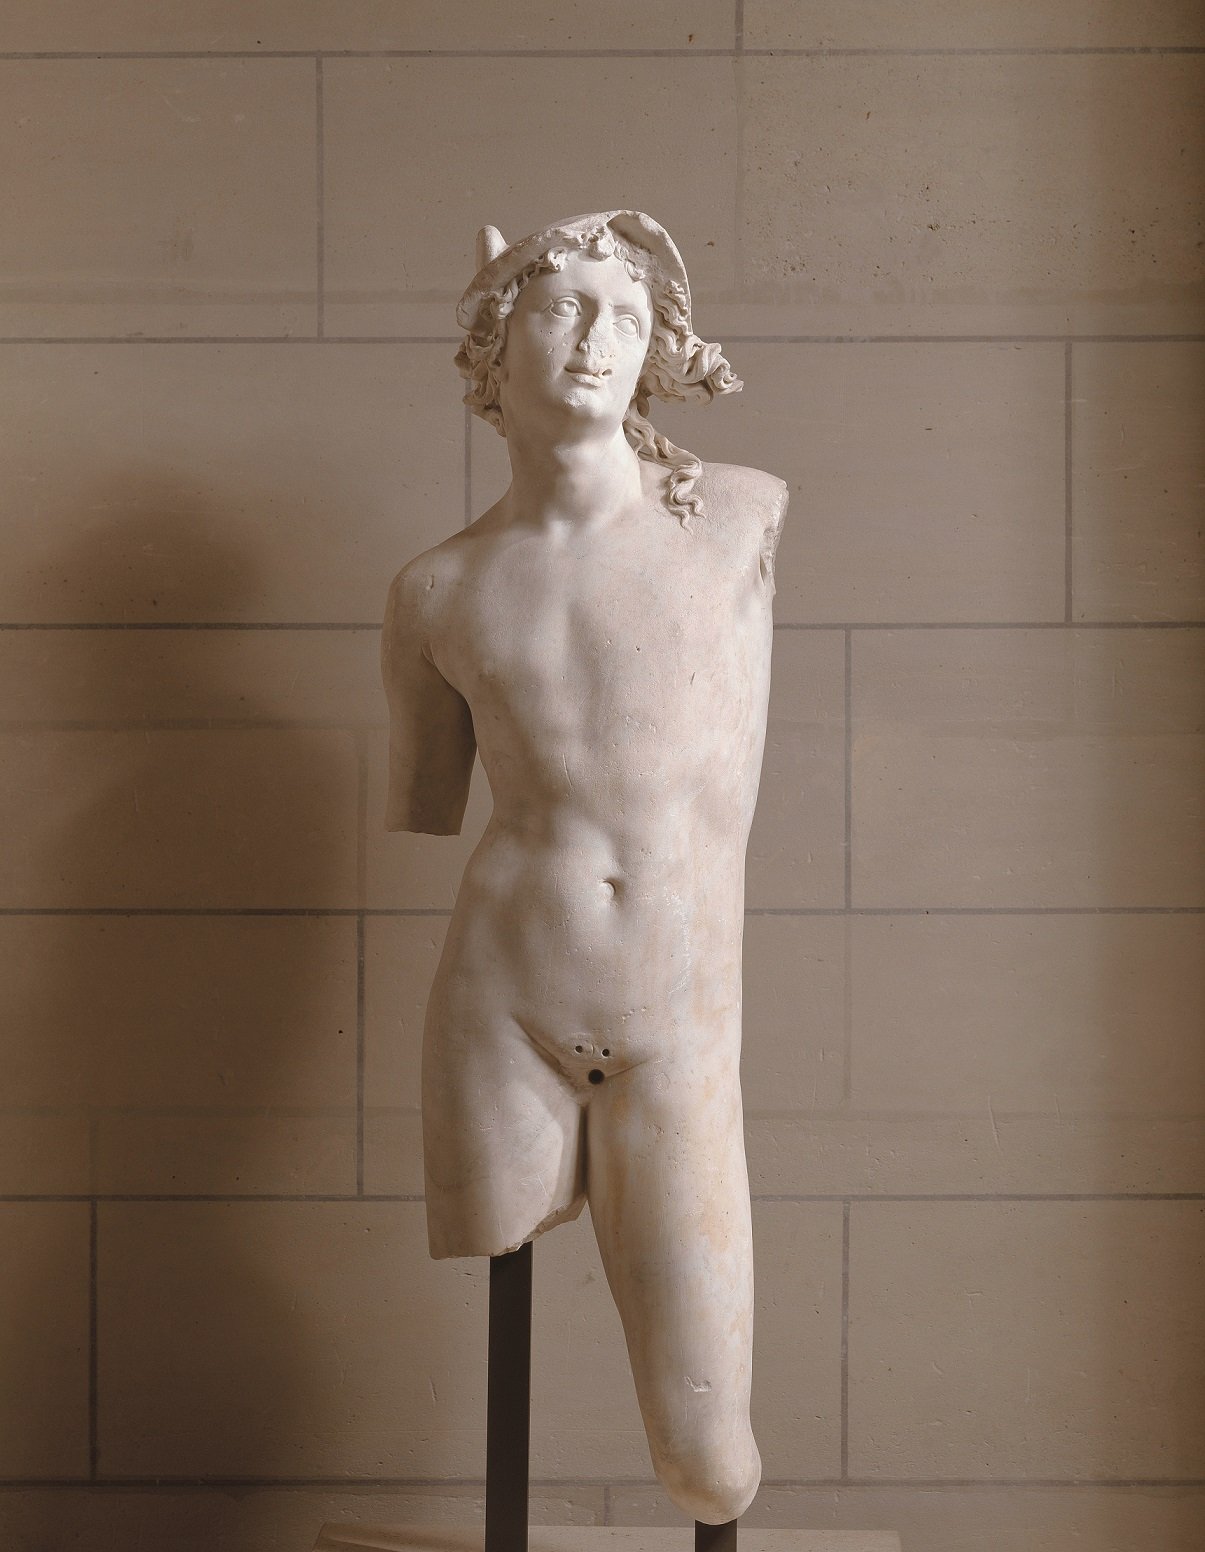 Baccio Bandinelli “Mercury" , before 1512. Marble. Paris, Musée du Louvre, Département des Sculptures